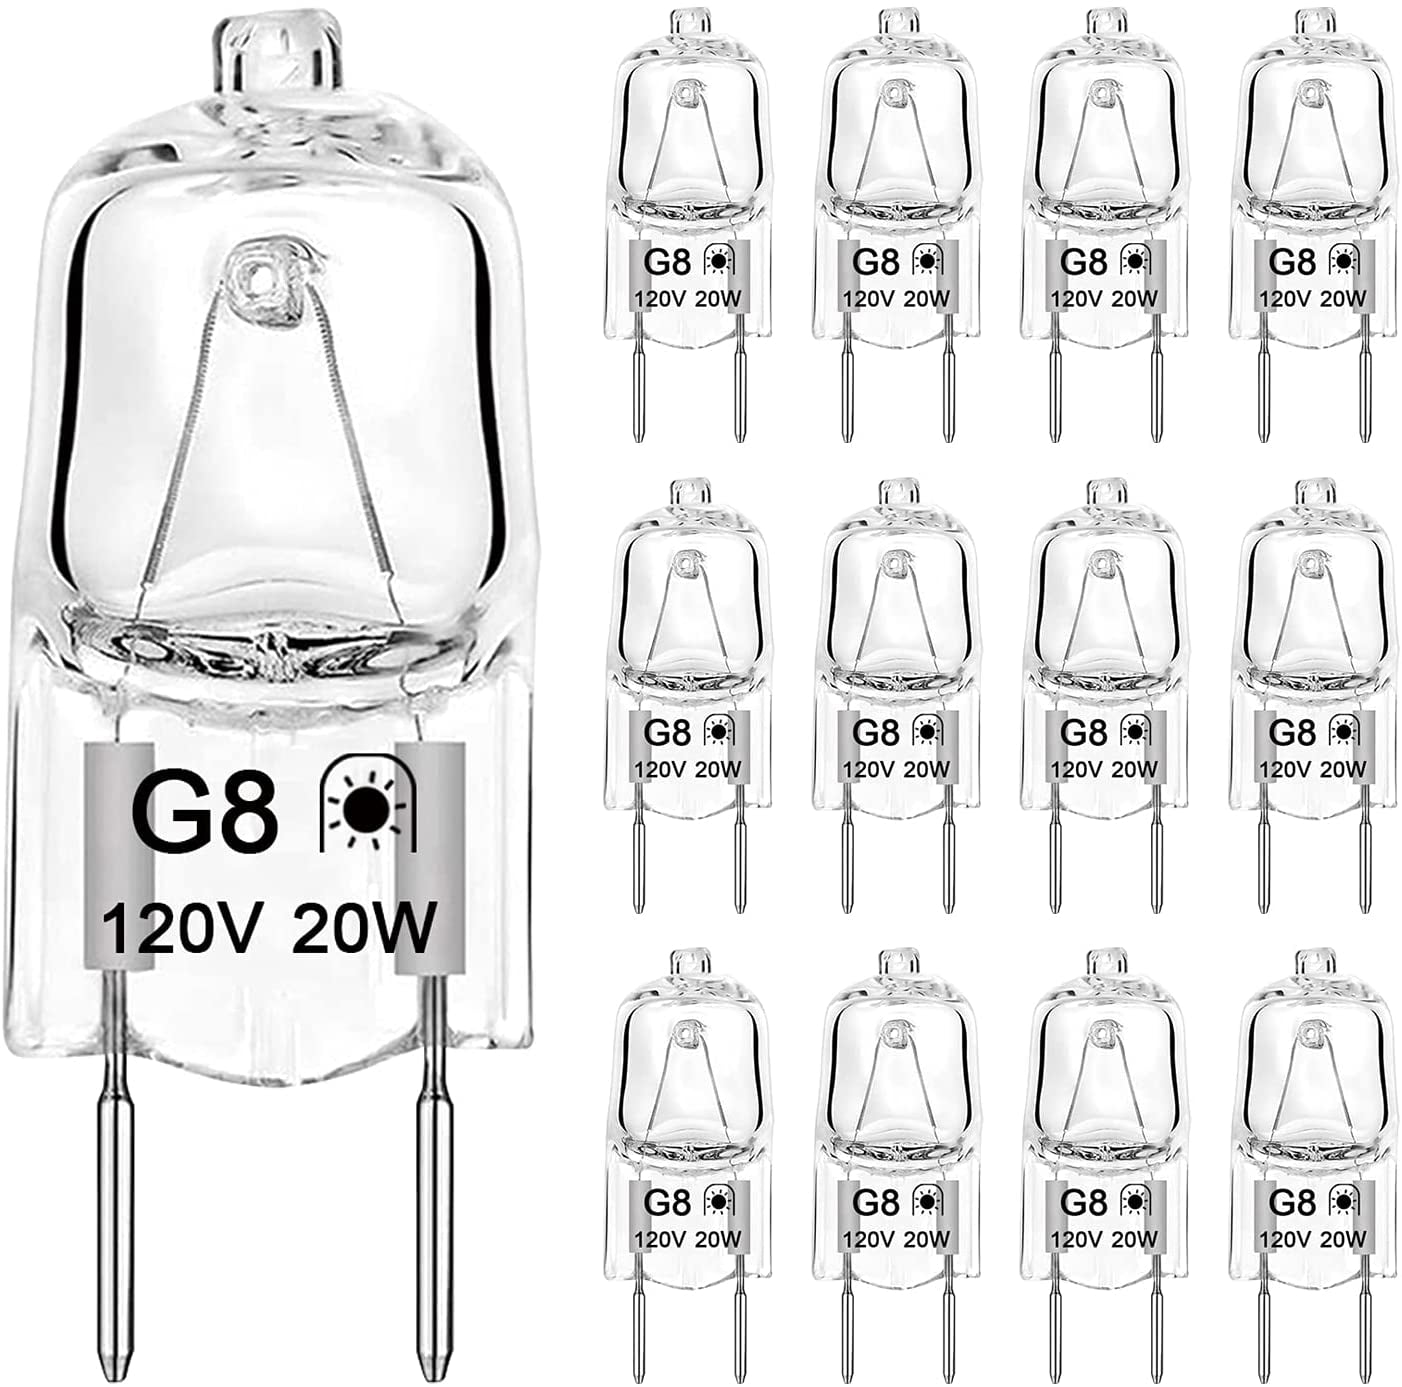 G8 Halogen Light Bulbs 20Watt 120Volt Halogen Light Bulb G8 Base Bi-Pin Shorter 1-3/8 Length 20W T4 JCD Warm White Under Cabinet Puck Lighting Replacements,12Pack 1.38 